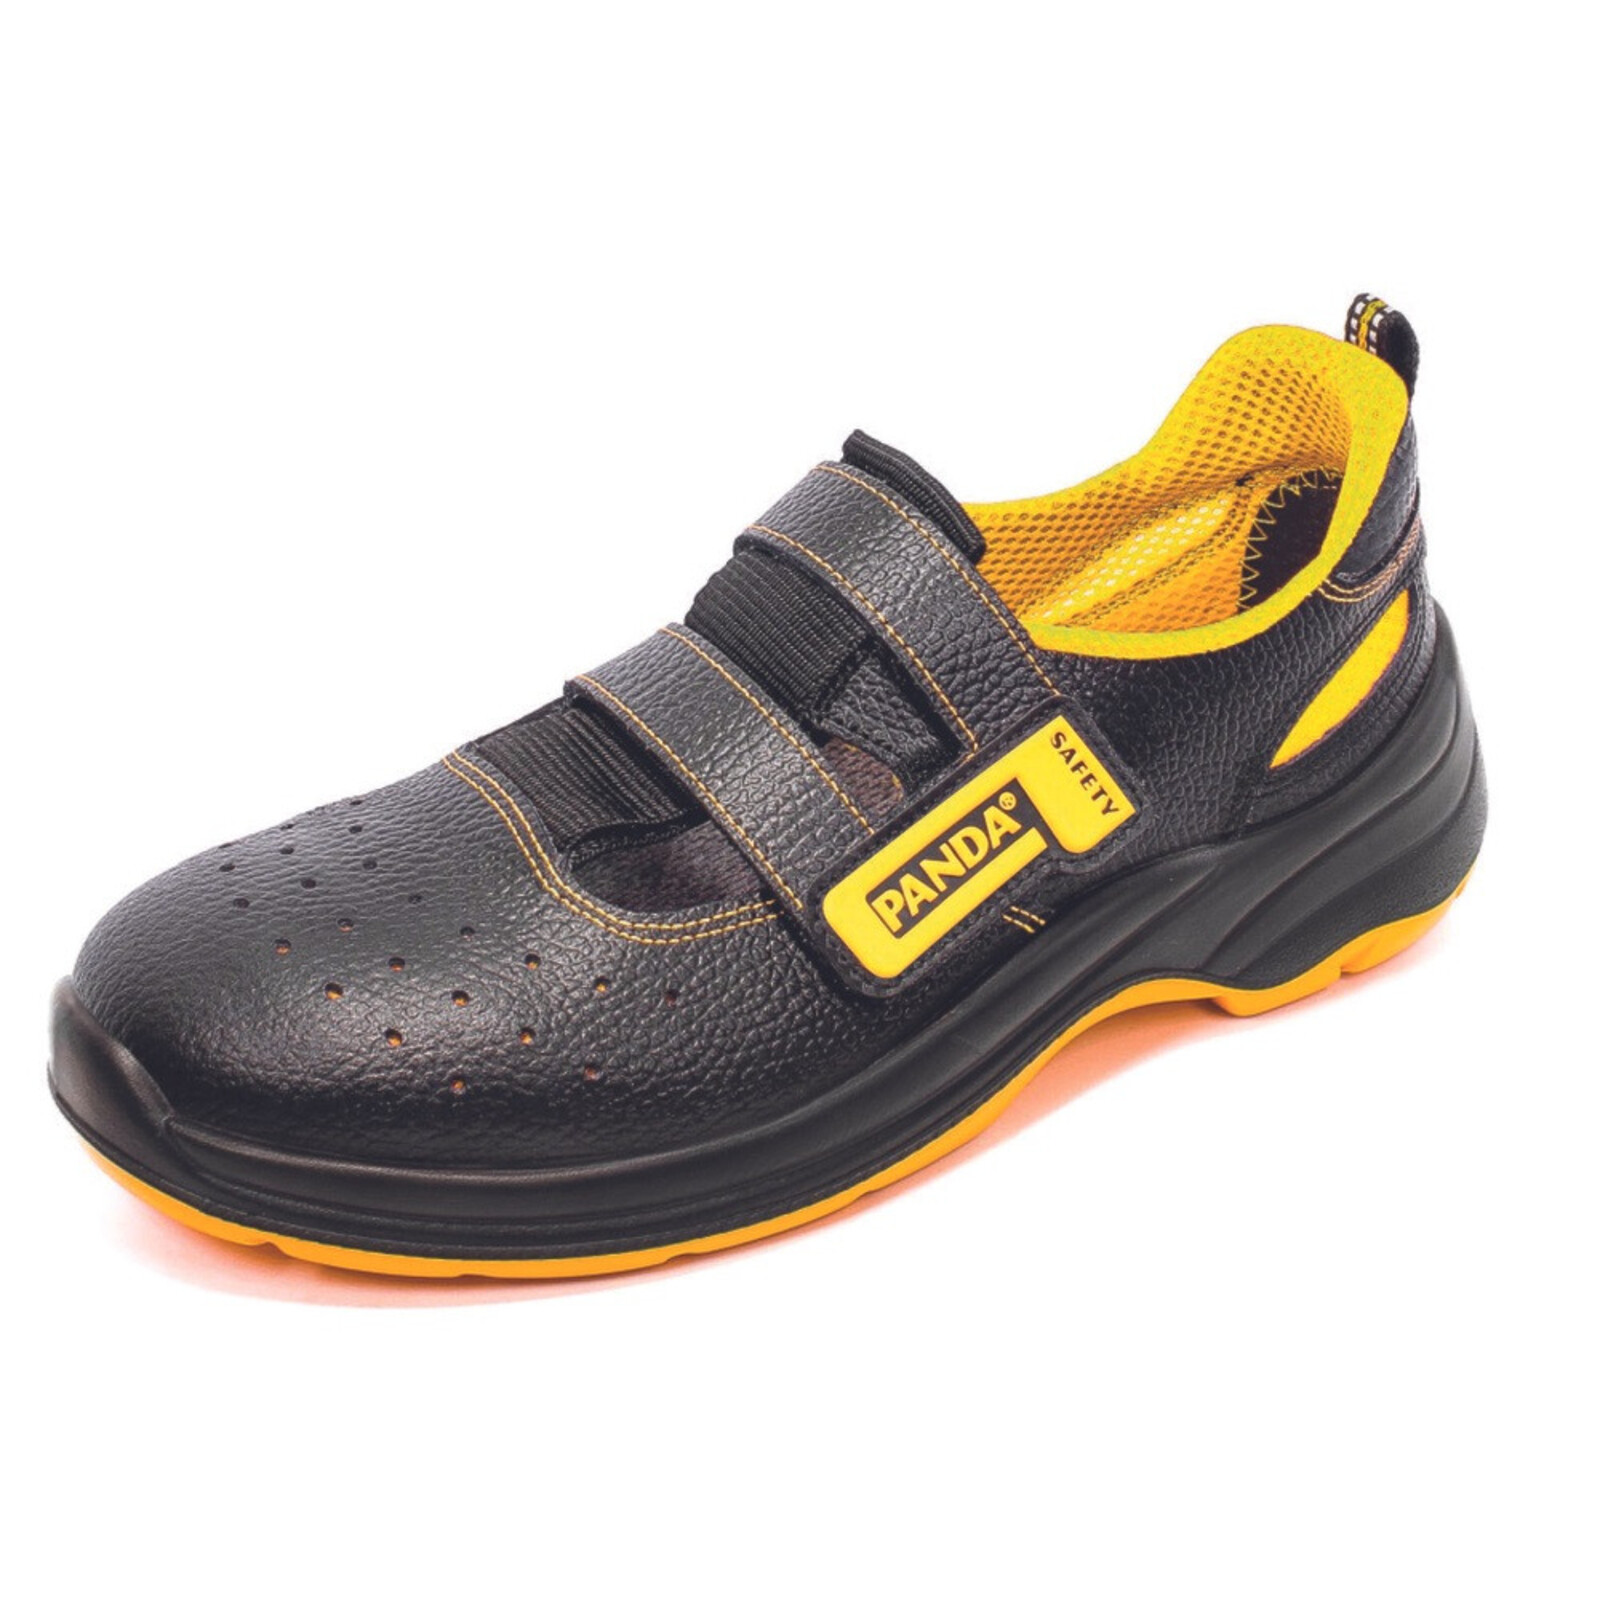 Bezpečnostné sandále Panda Basic Venezia MF S1P SRC - veľkosť: 42, farba: čierna/žltá